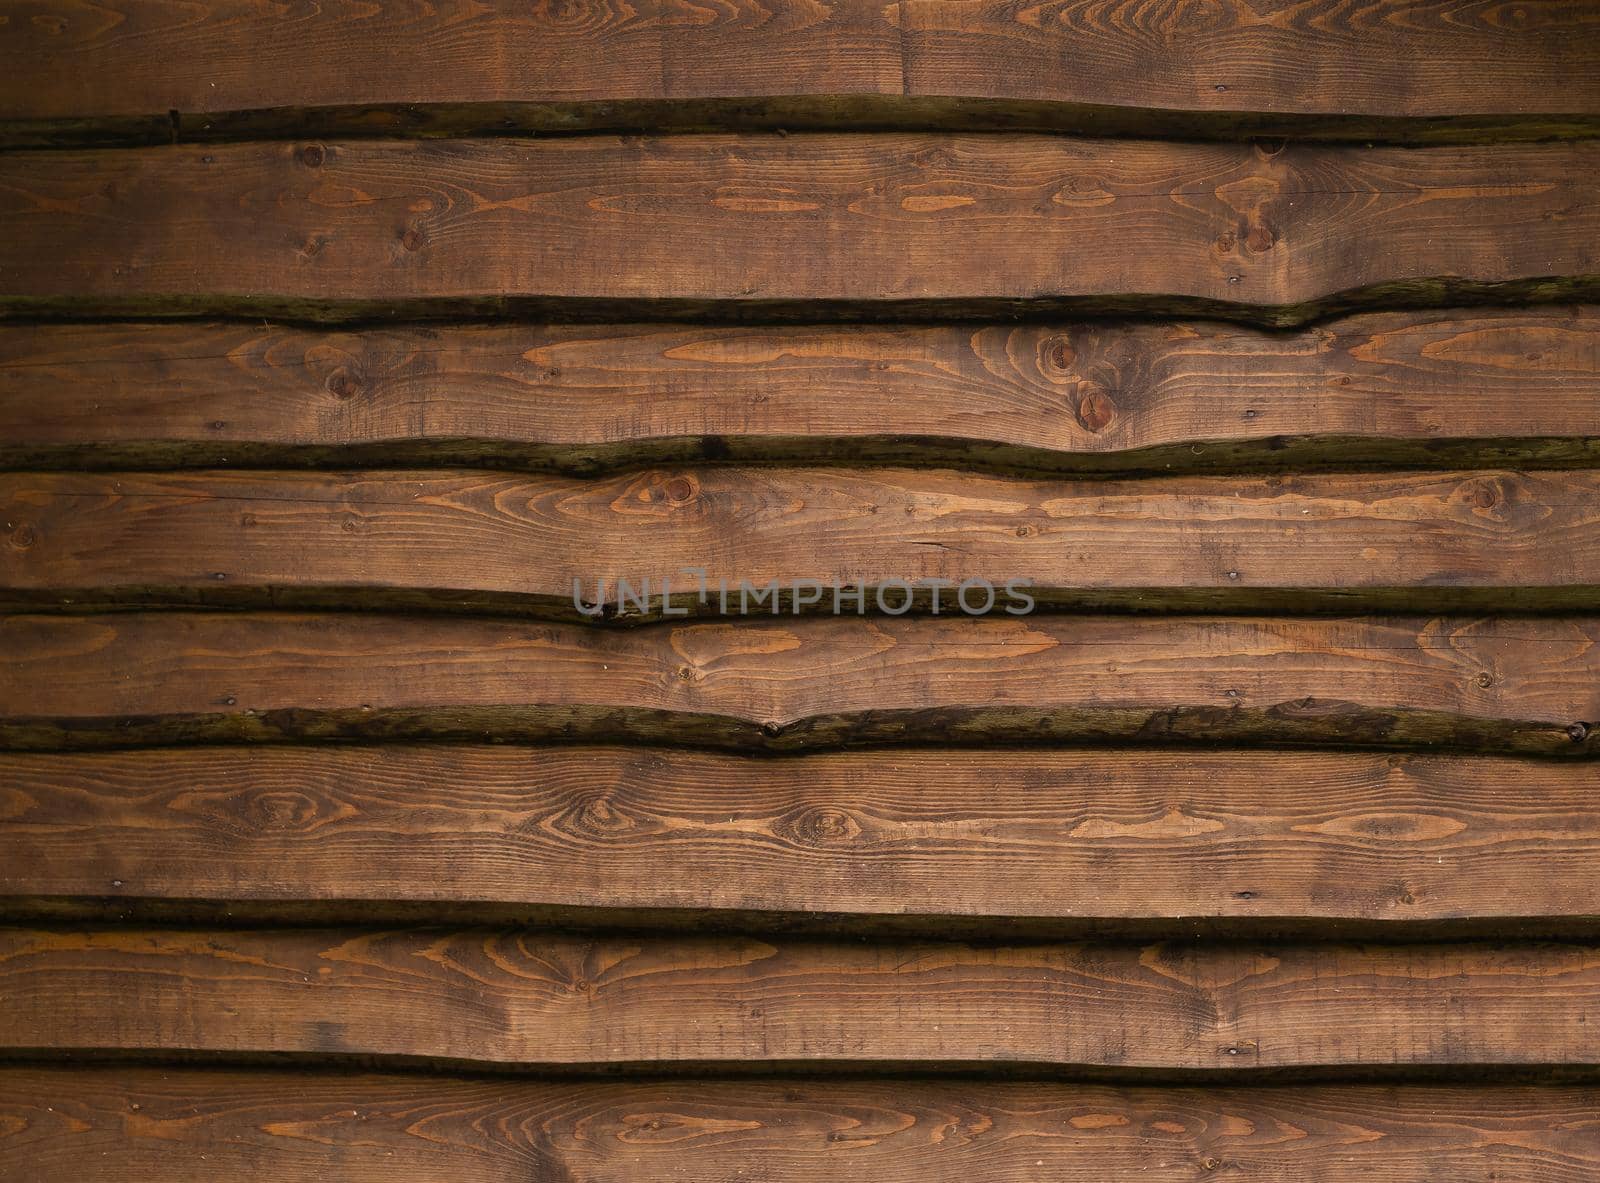 Dark wood texture. Background dark old wooden panels